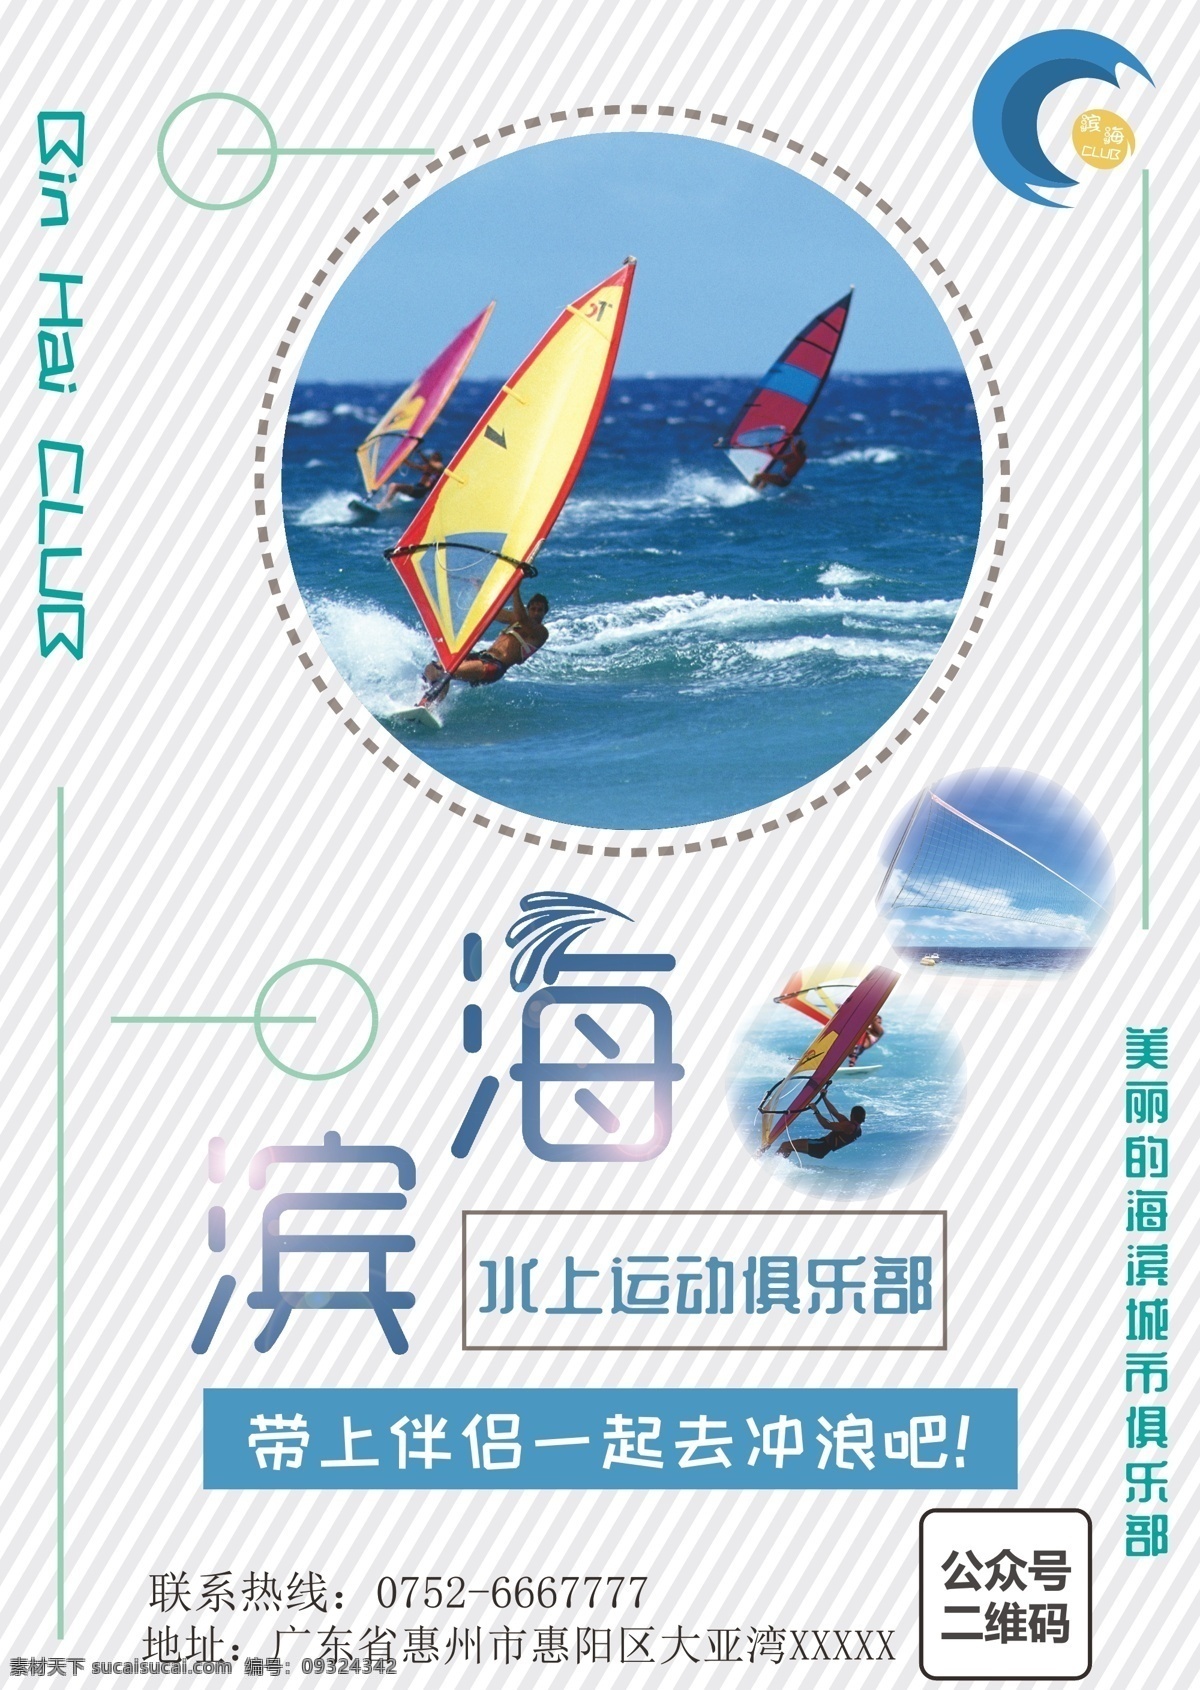 水上运动 俱乐部 滨海 海上运动 创意海报 水上乐园 水 帆船 作品